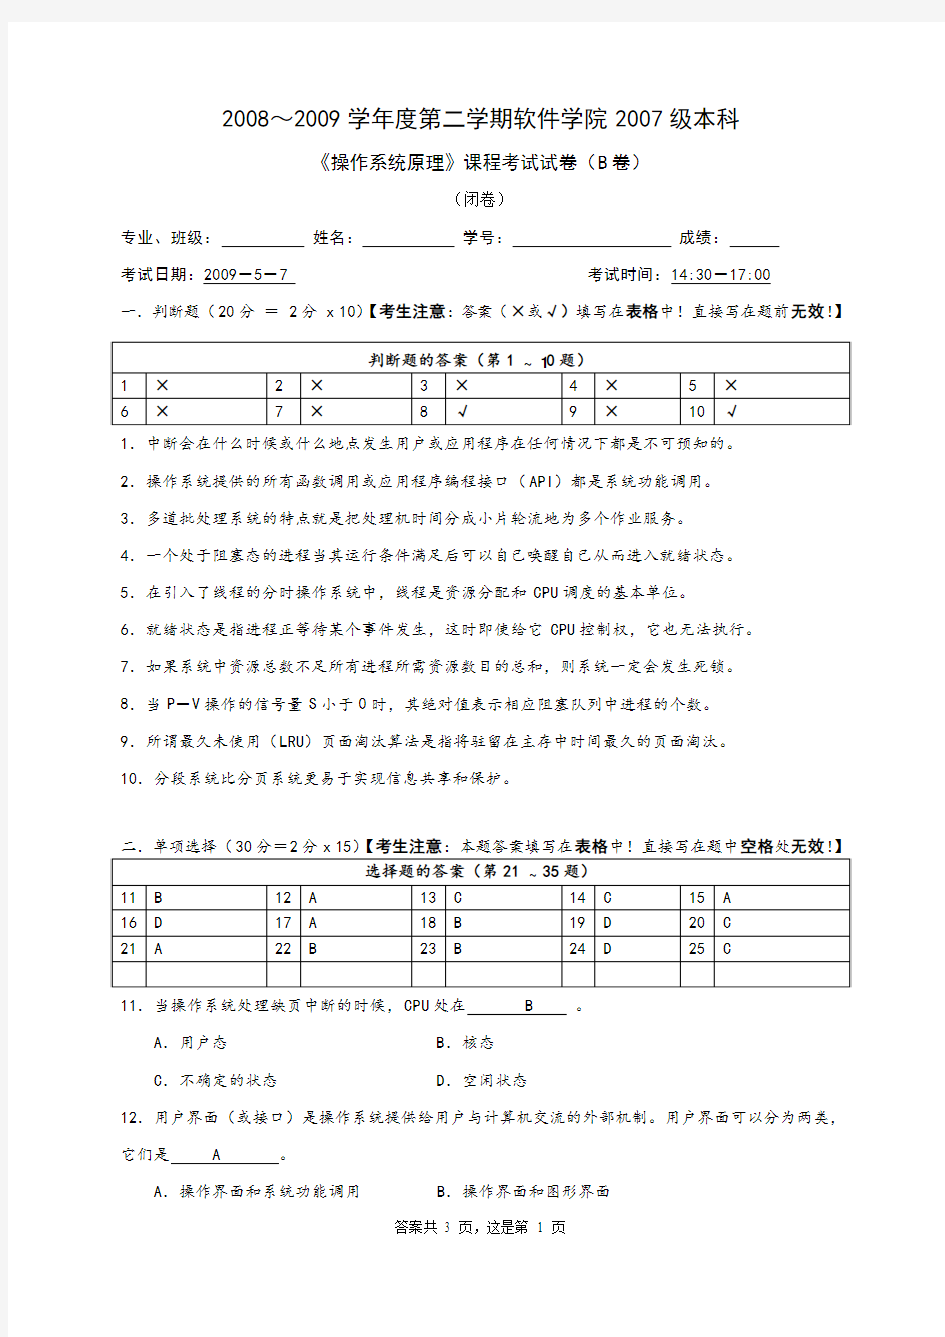 华中科技大学操作系统3(本部07级)期末考试试卷-B答案